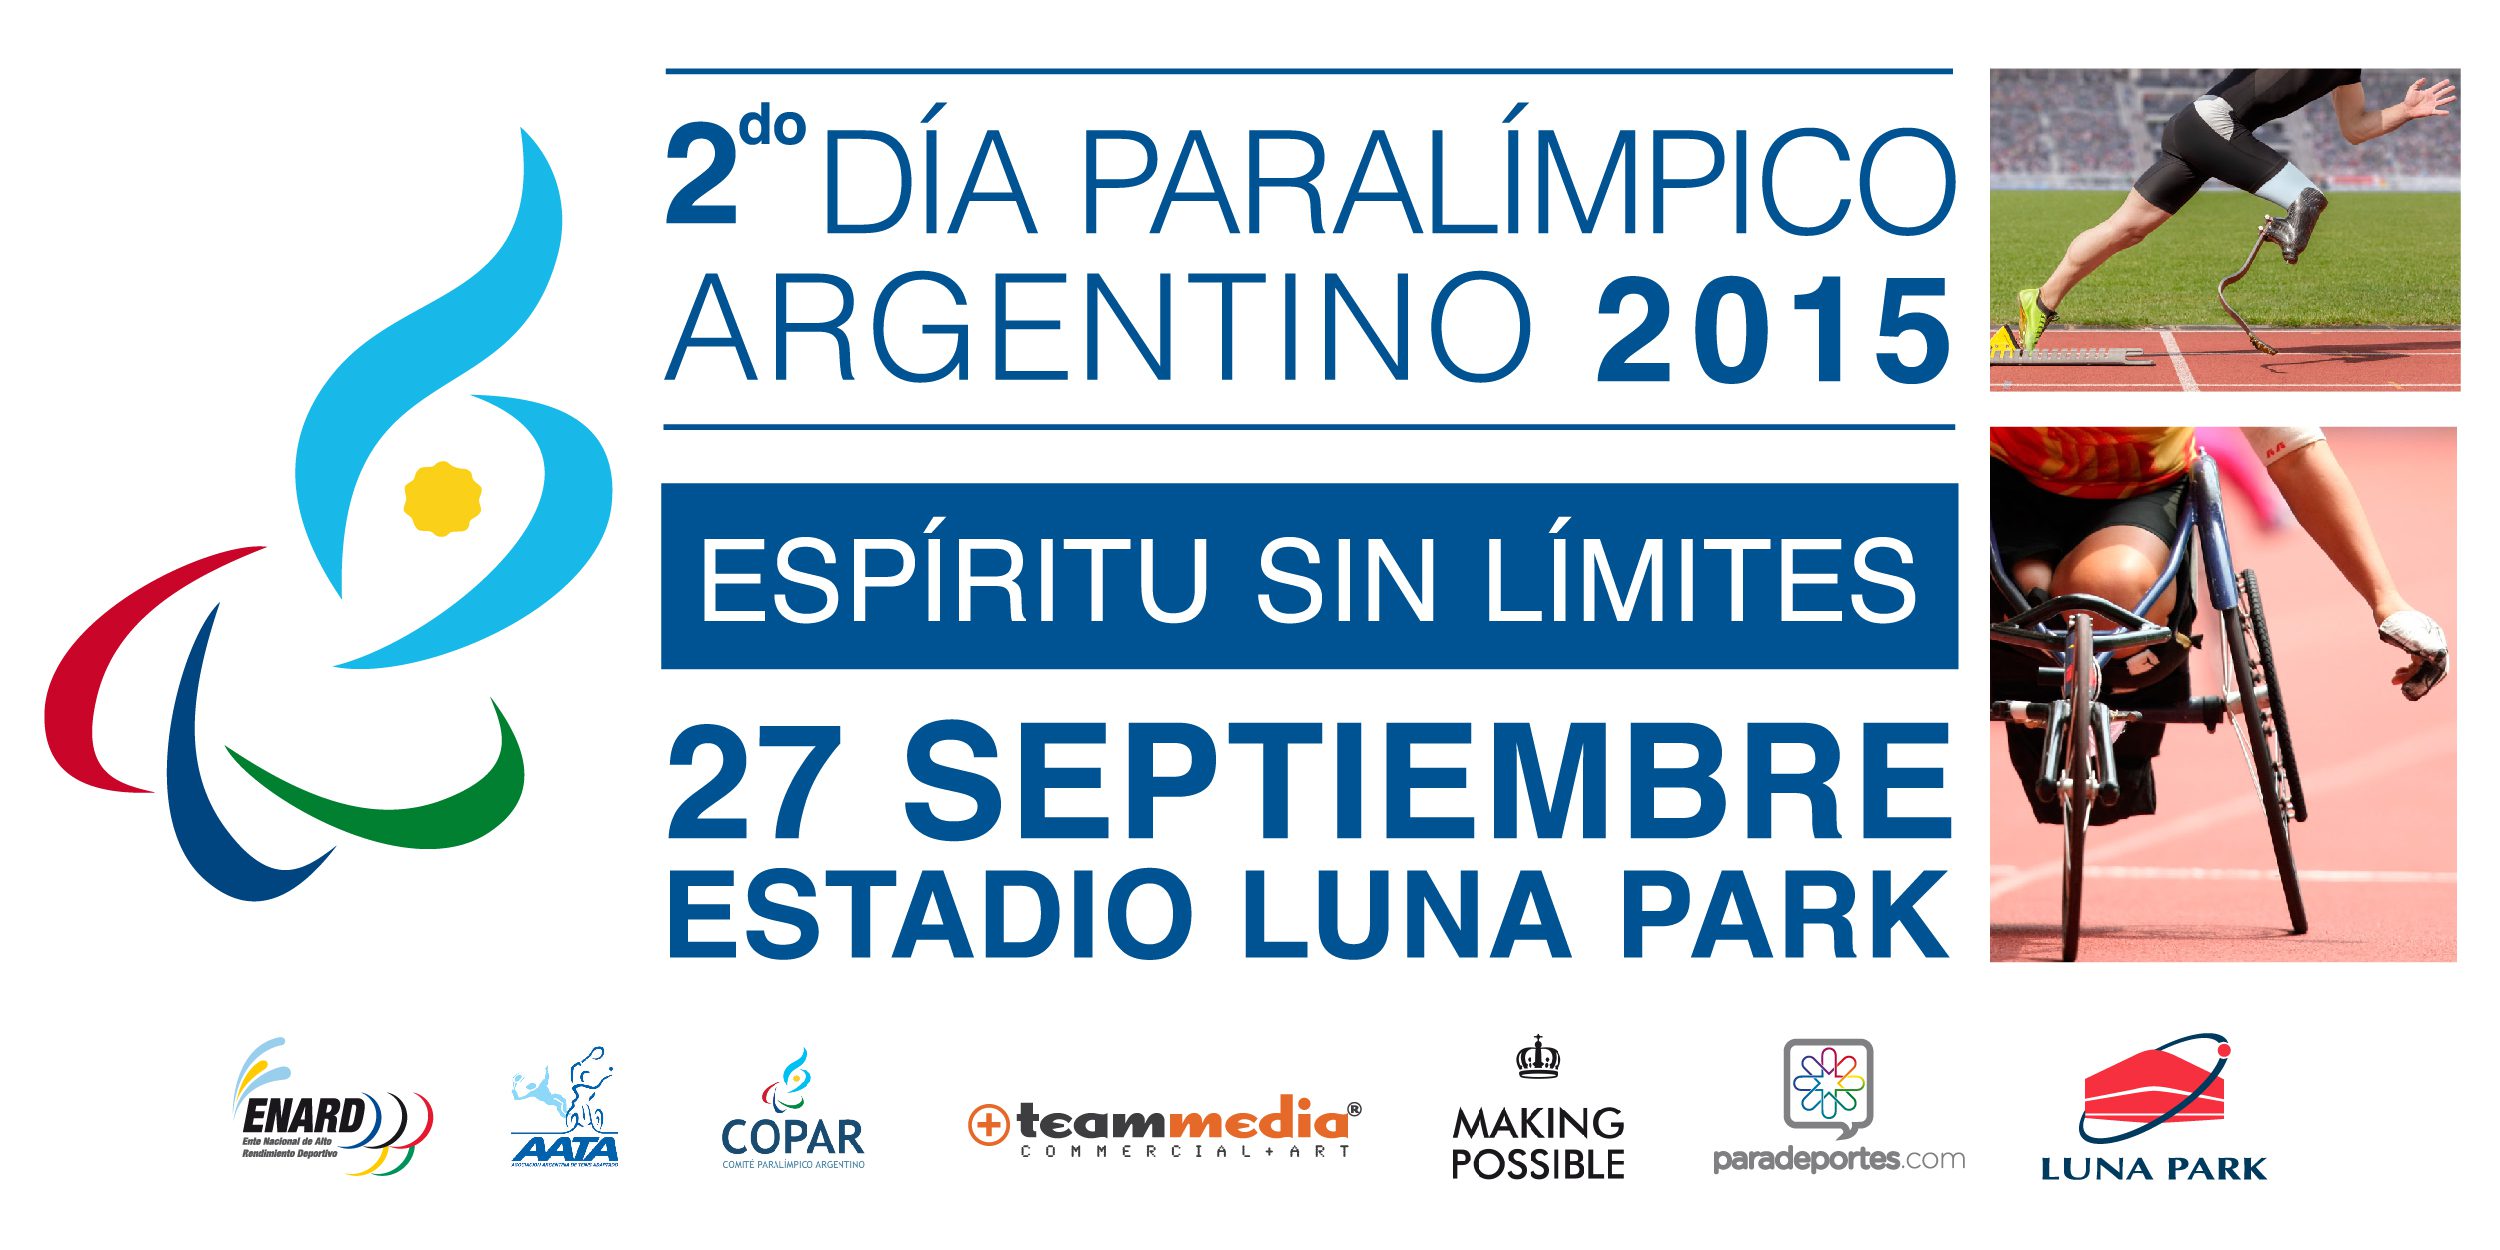 Se viene el segundo Día Paralímpico en Argentina